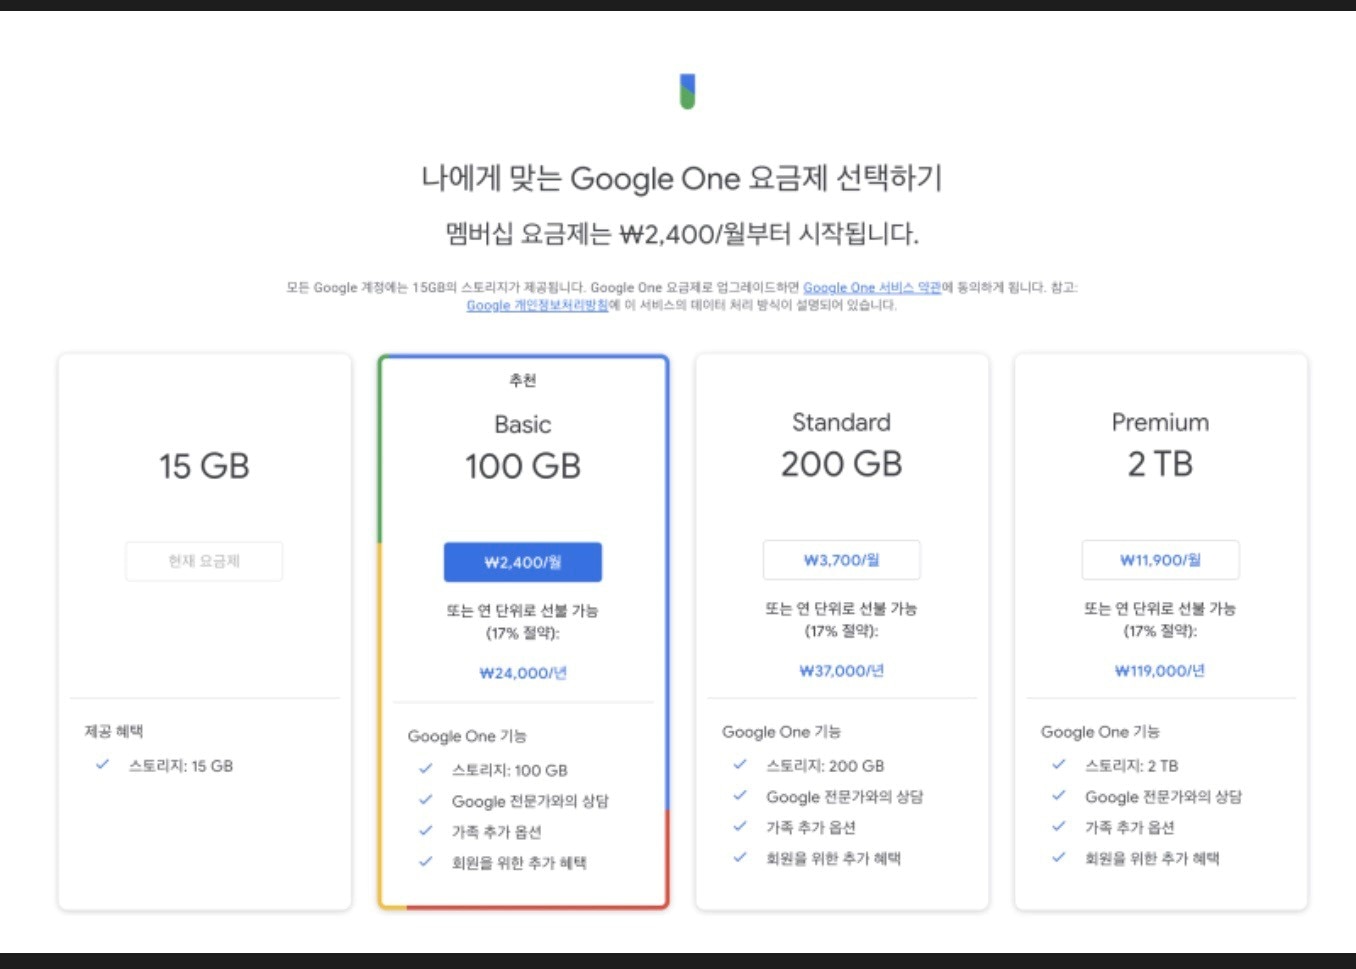 구글 드라이브 용량 증가를 위한 유료서비스 종류